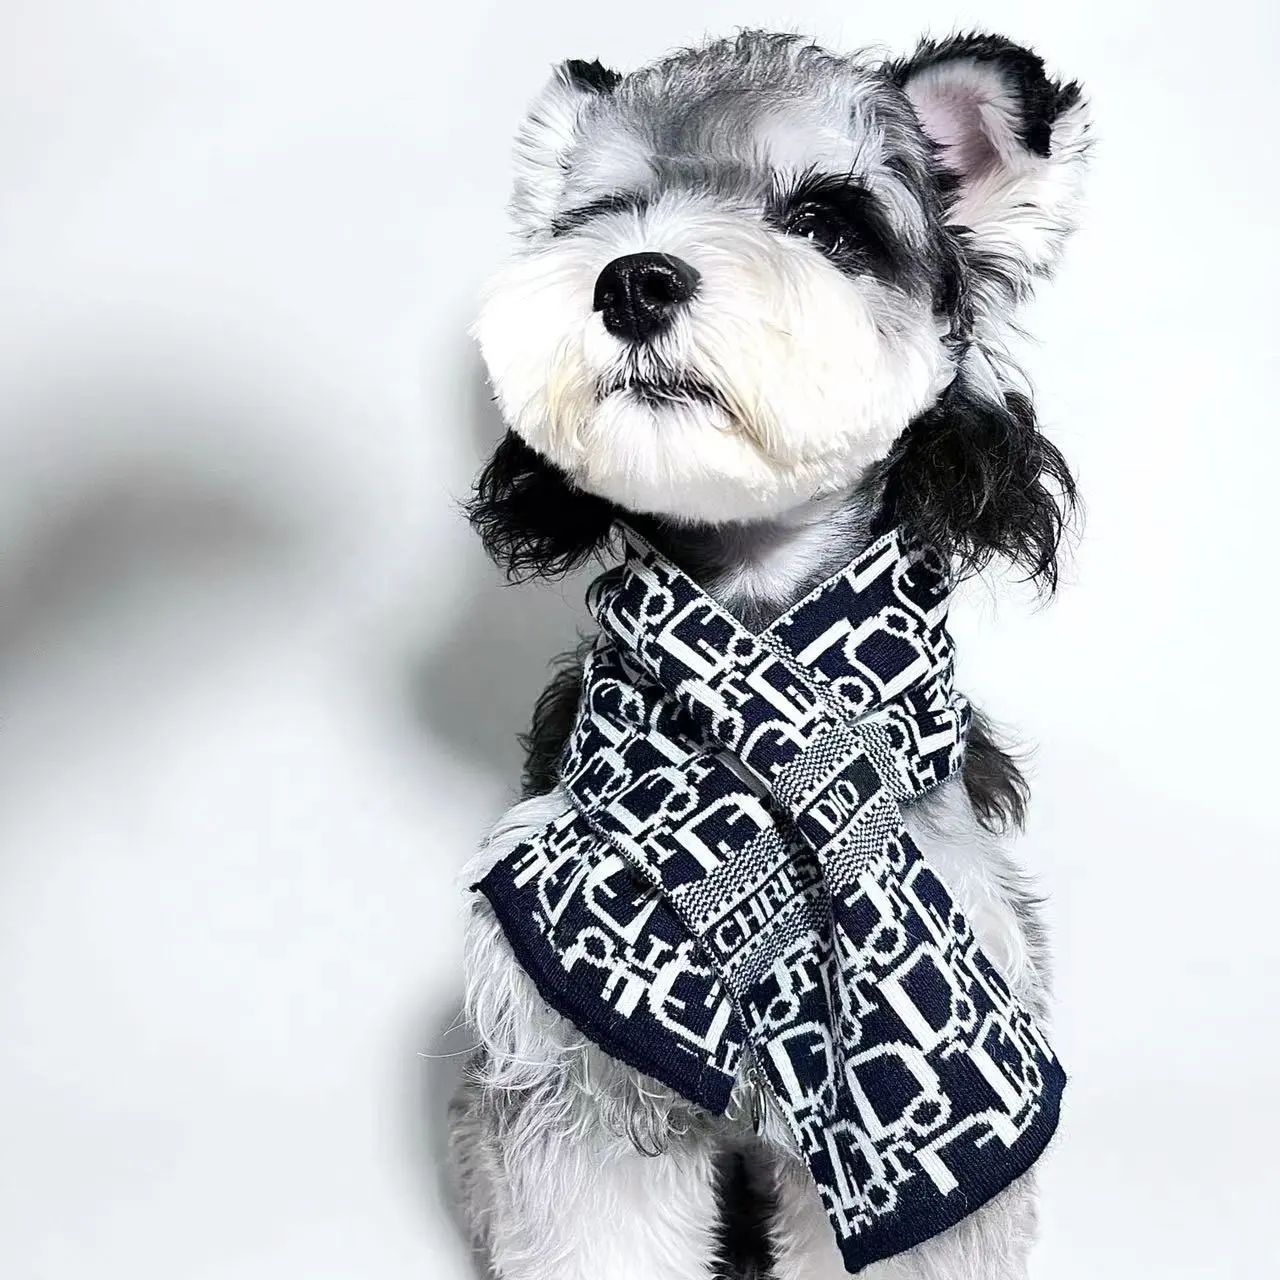 Üretici toptan moda marka Pet eşarp örme köpek atkılar tasarımcı kış köpek boyun önlük kedi atkısı Pet aksesuarları